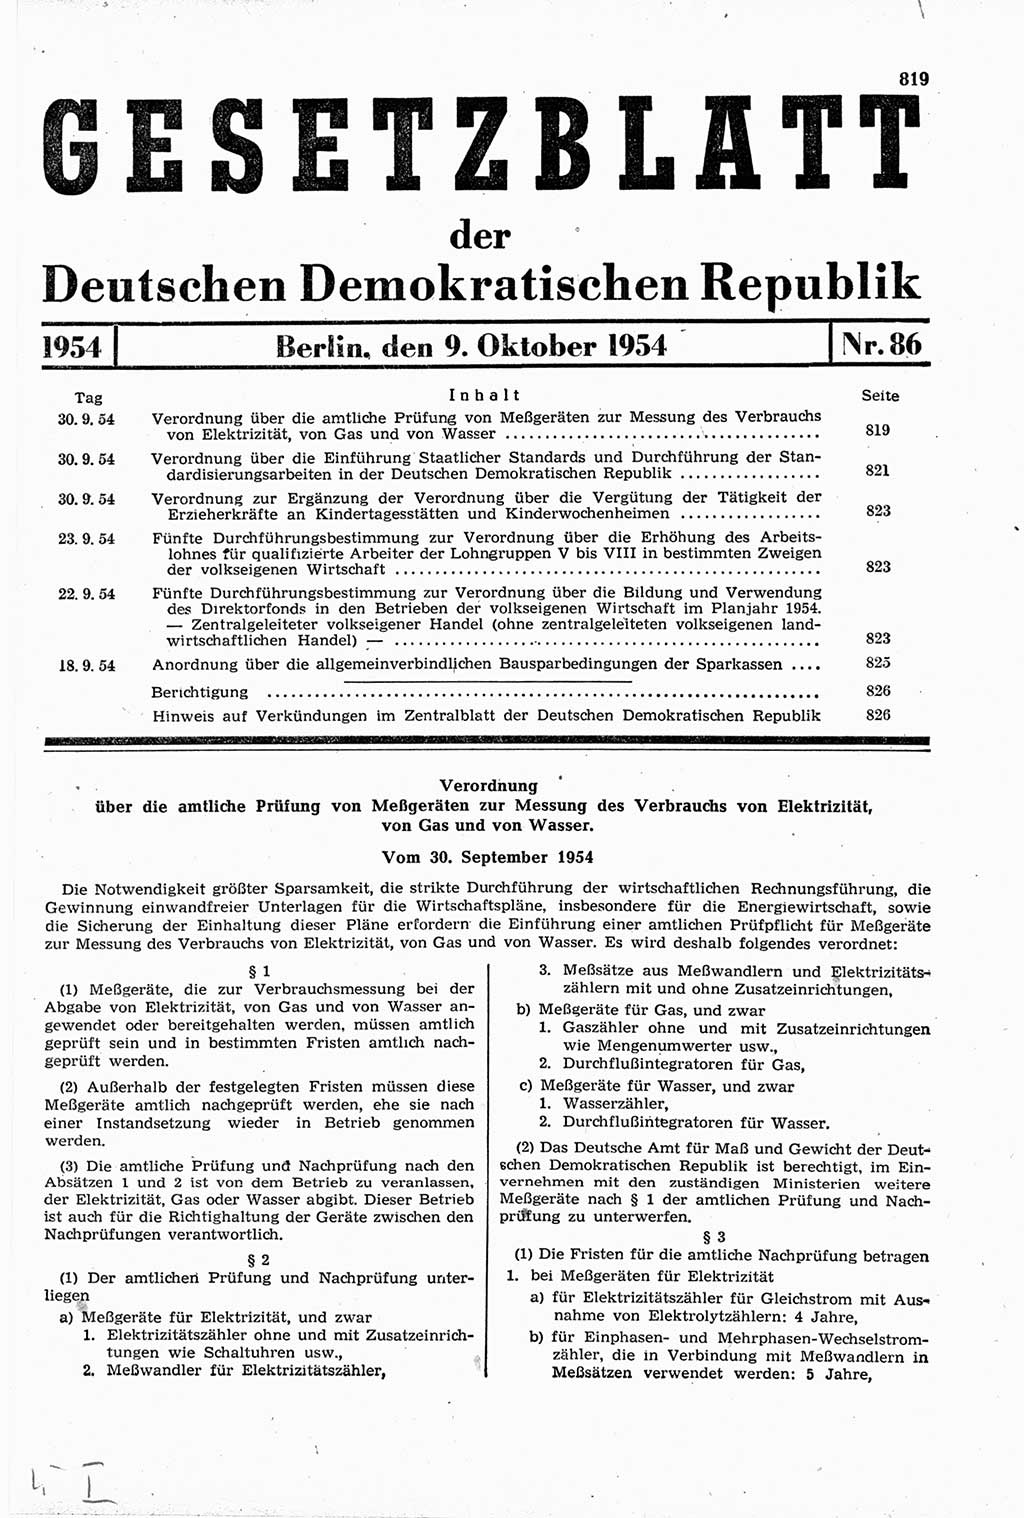 Gesetzblatt (GBl.) der Deutschen Demokratischen Republik (DDR) 1954, Seite 819 (GBl. DDR 1954, S. 819)